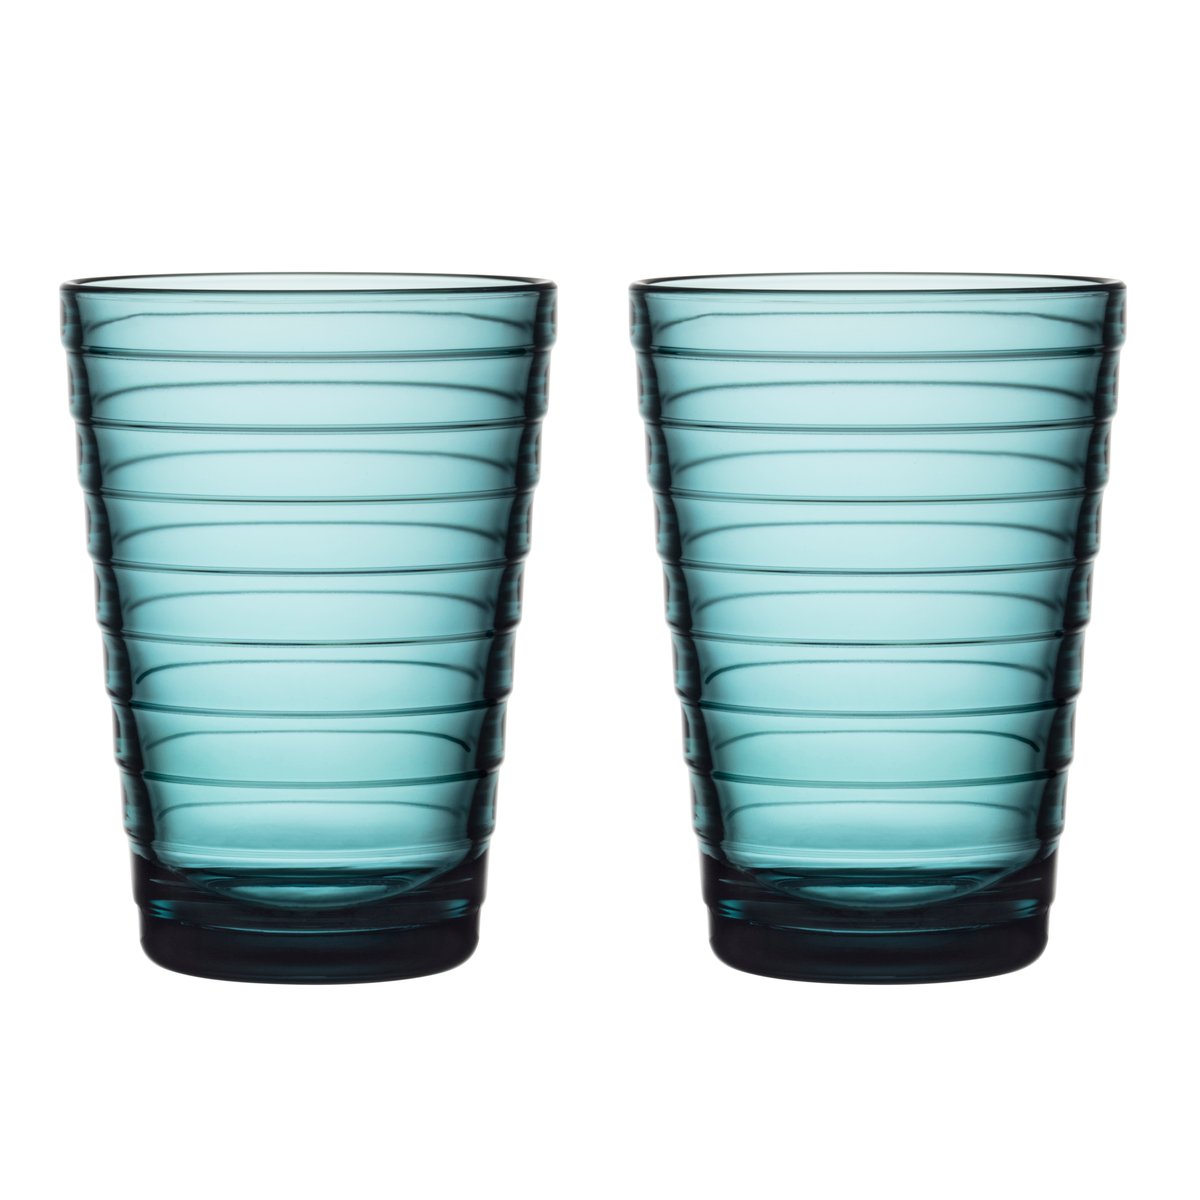 Två glas i havsblått, i design av Aina Aalto. Beställ online hos Nordic Nest!